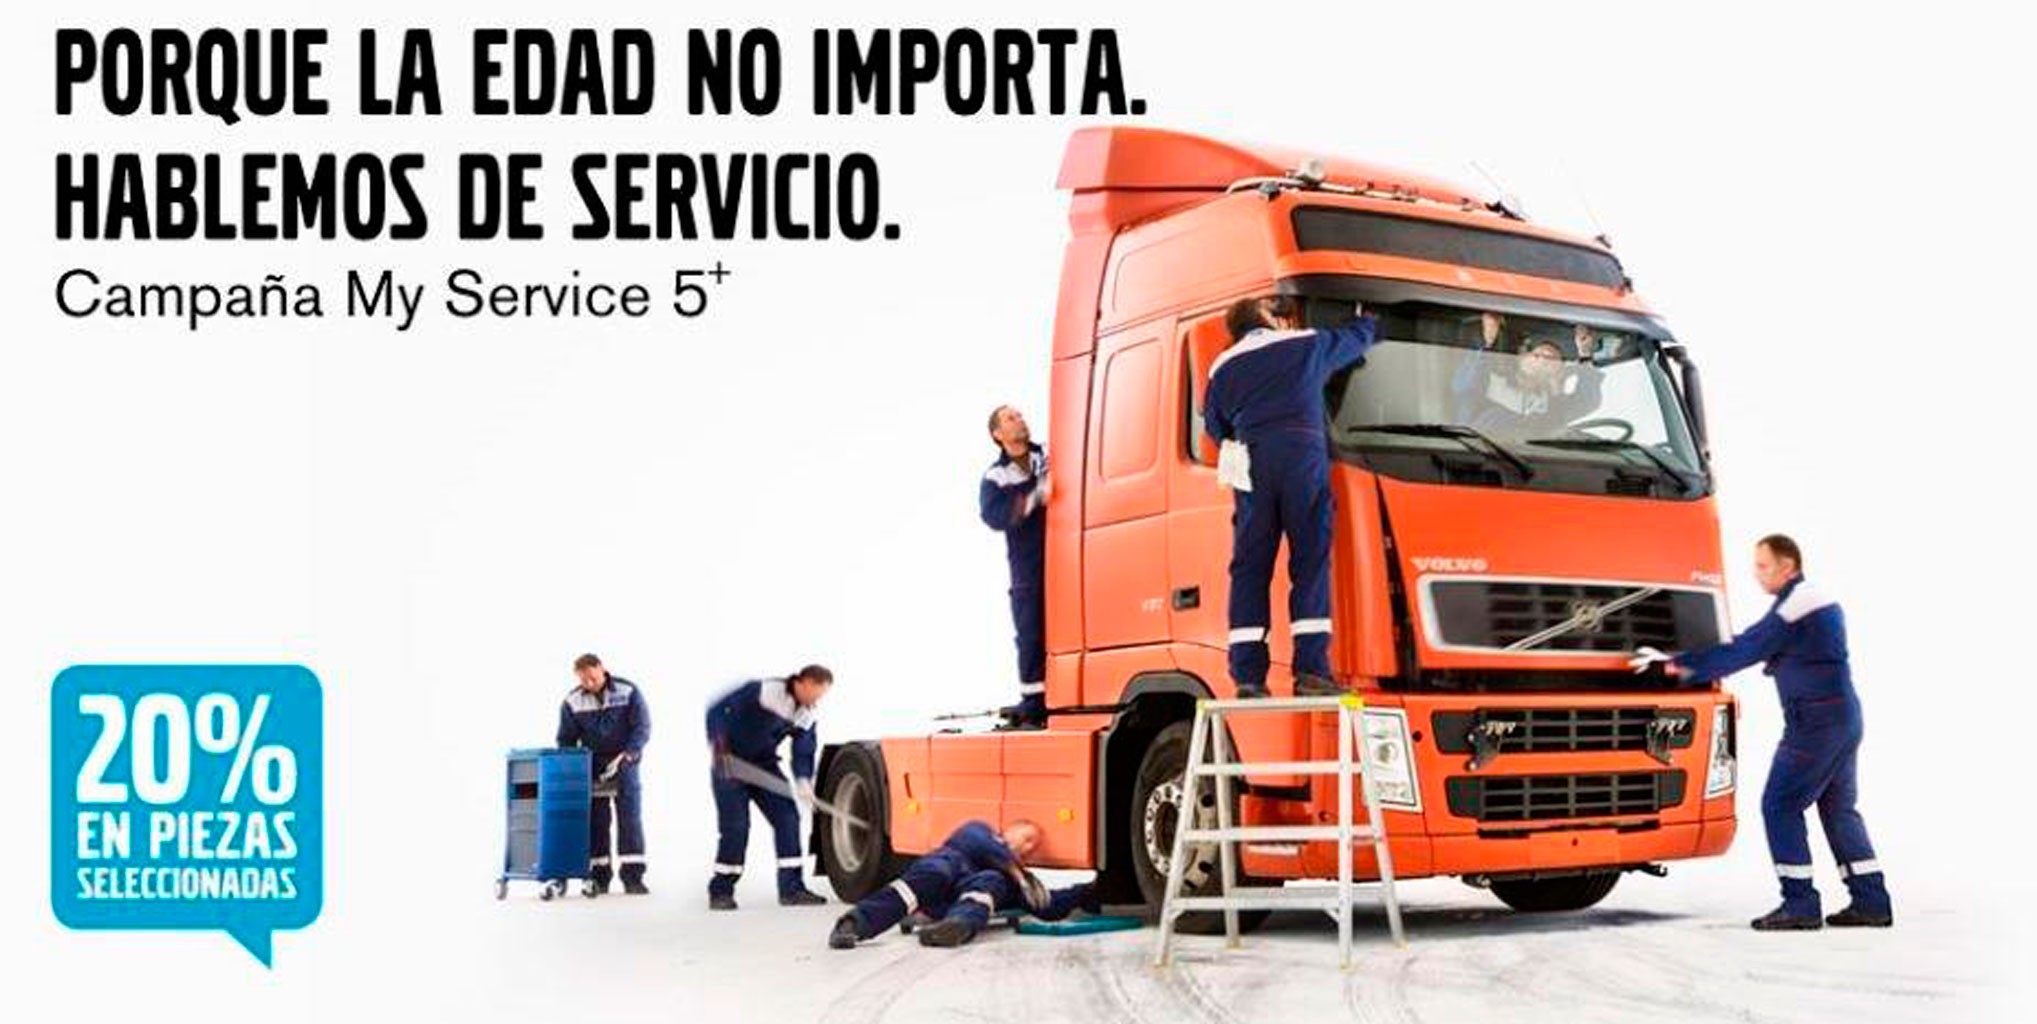 Volvo Truck presenta My Sevice 5+